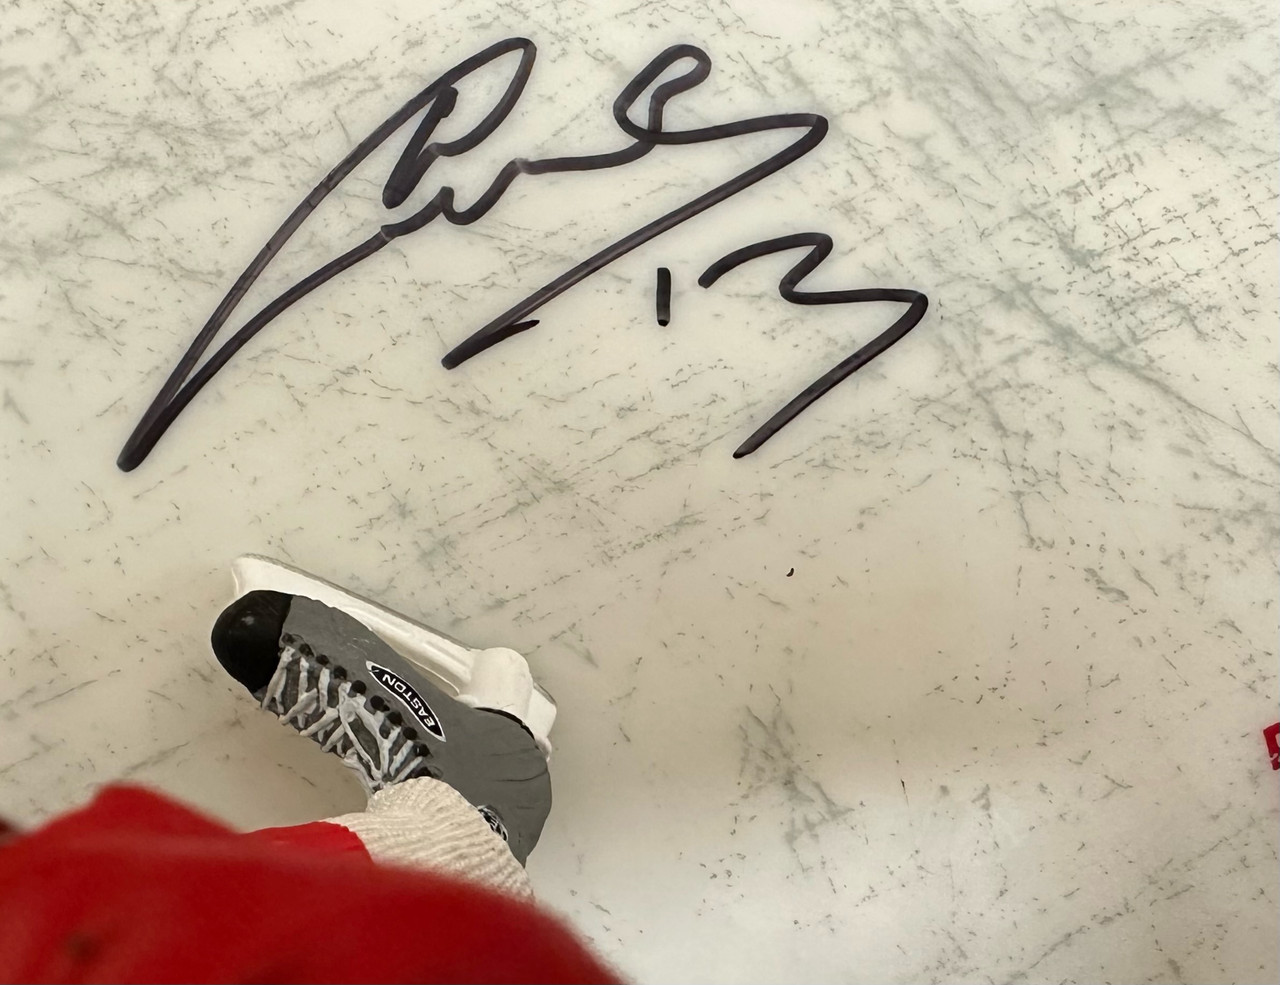 Pavel Datsyuk Signed Autographed McFarlane Figure JSA AK60638